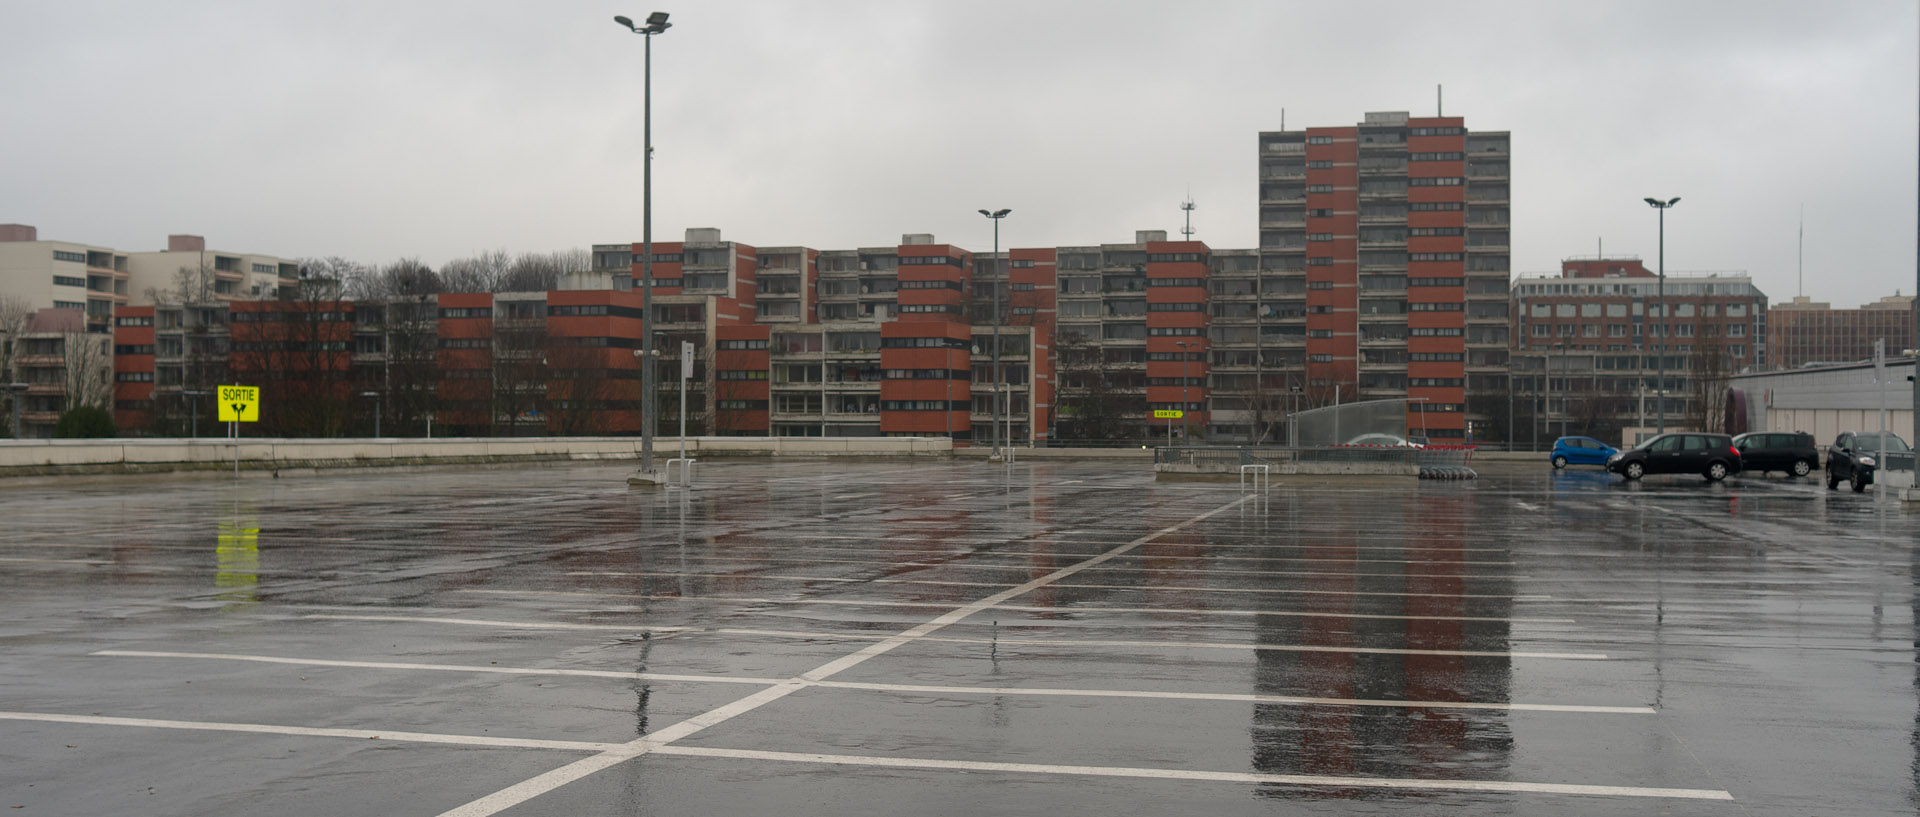 Parking supérieur du centre commercial Auchan V2, à Villeneuve d'Ascq.